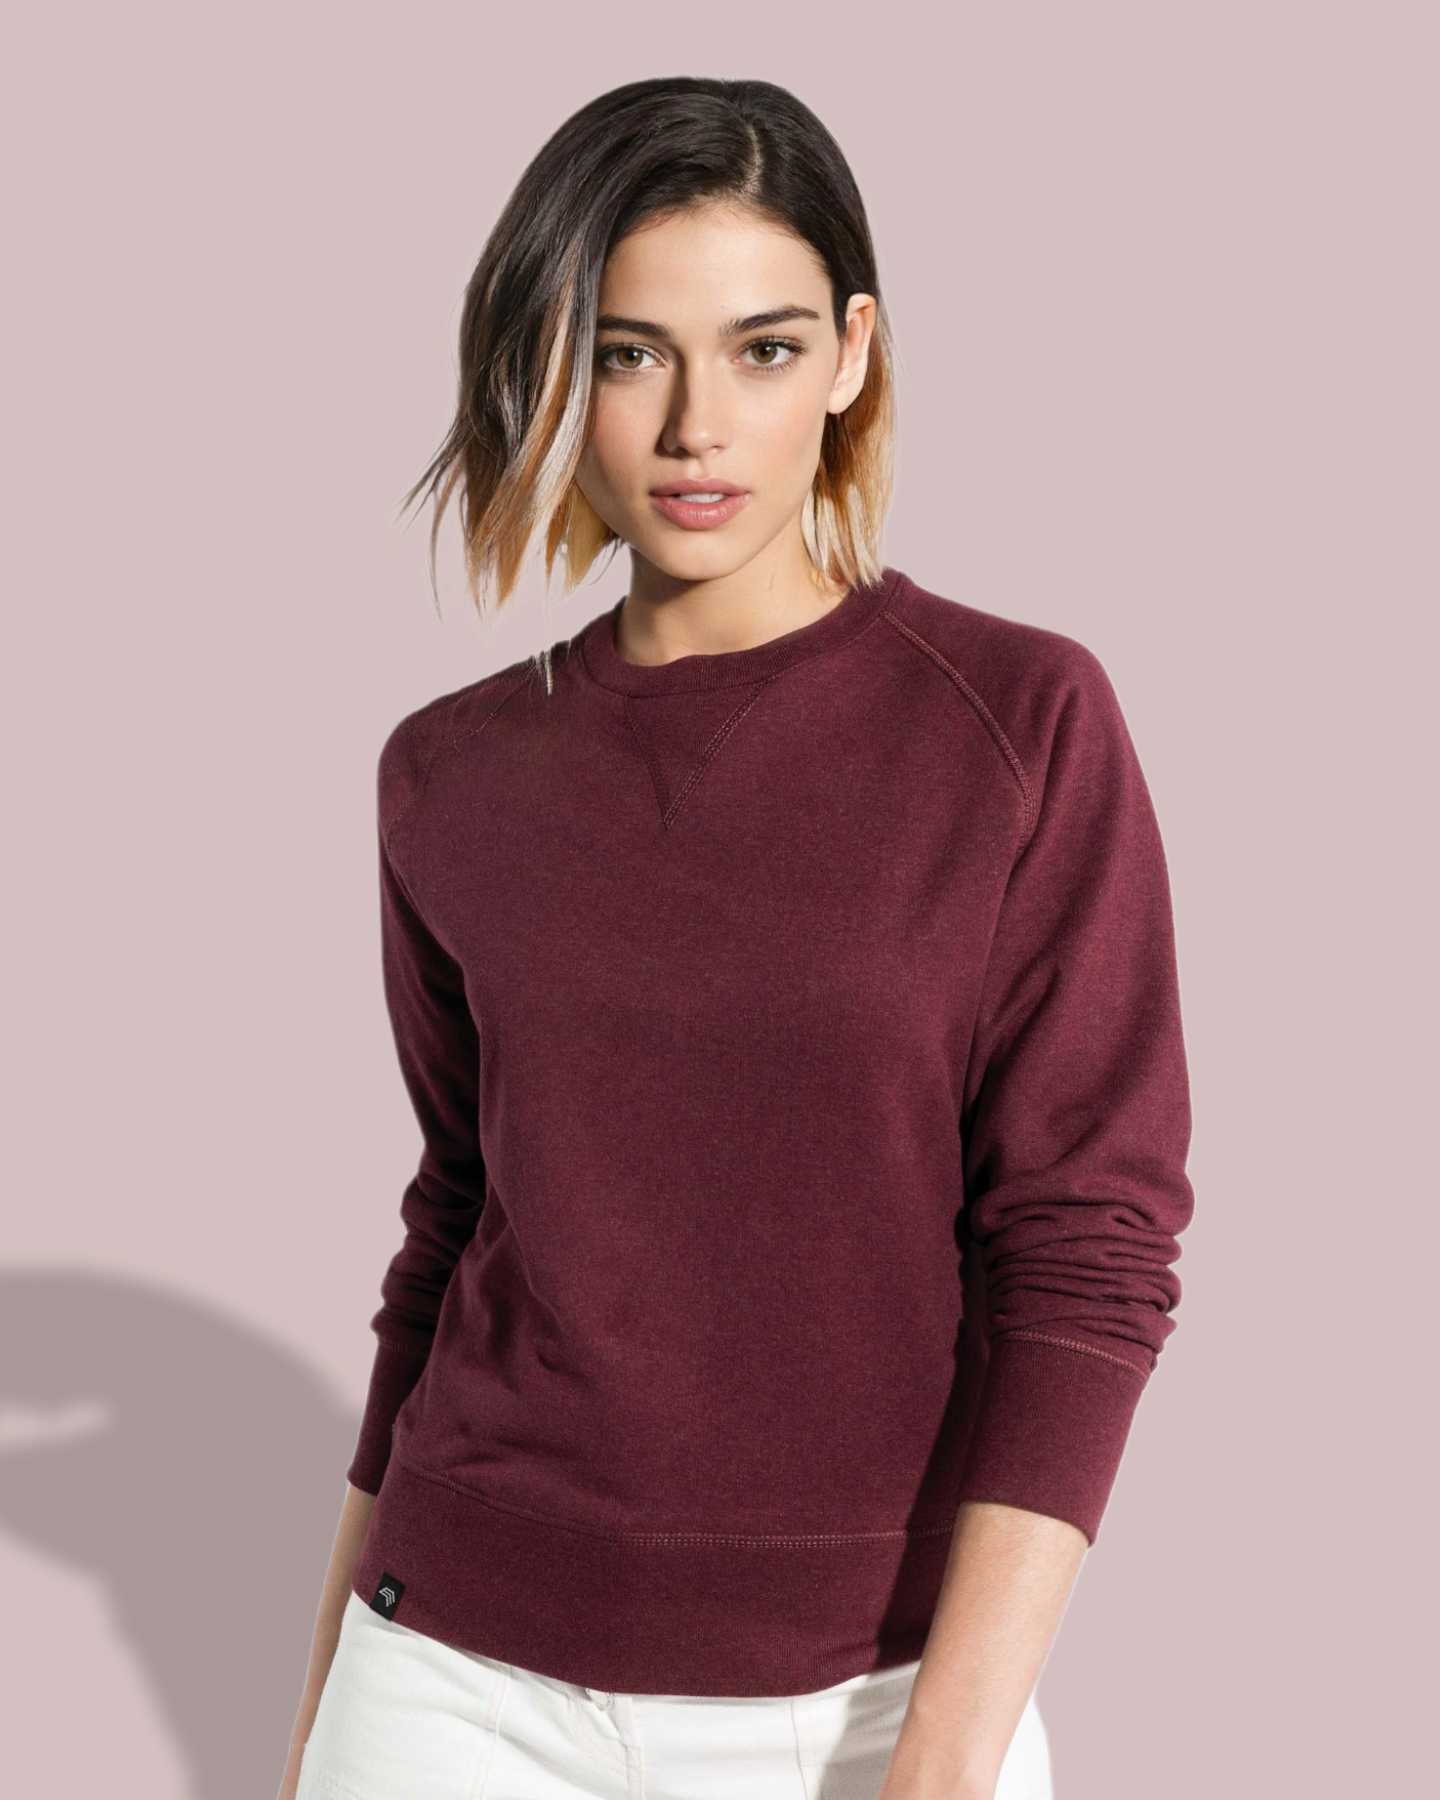 ― % ― KRB K481 ― Women's Bio-Baumwolle Sweatshirt - Rot Burgund Melange [XL]